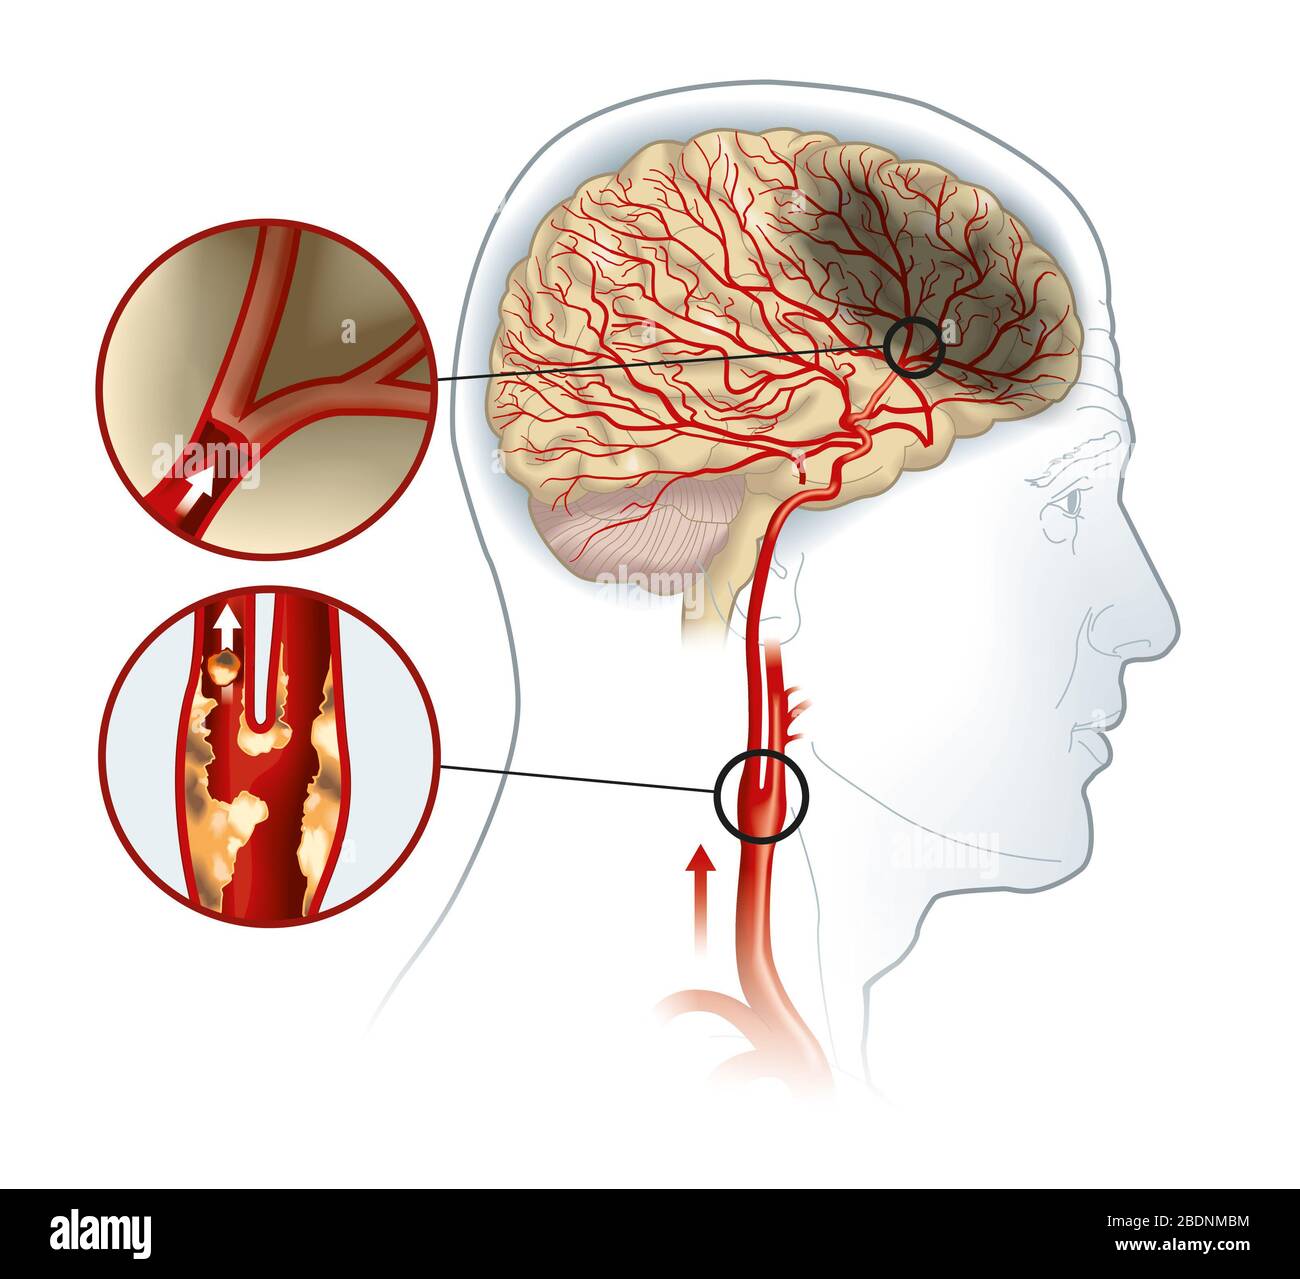 Abbildung: Plaque in der A. carotis, Blutgerinnsel, die abbricht und den Blutfluss blockiert Stockfoto